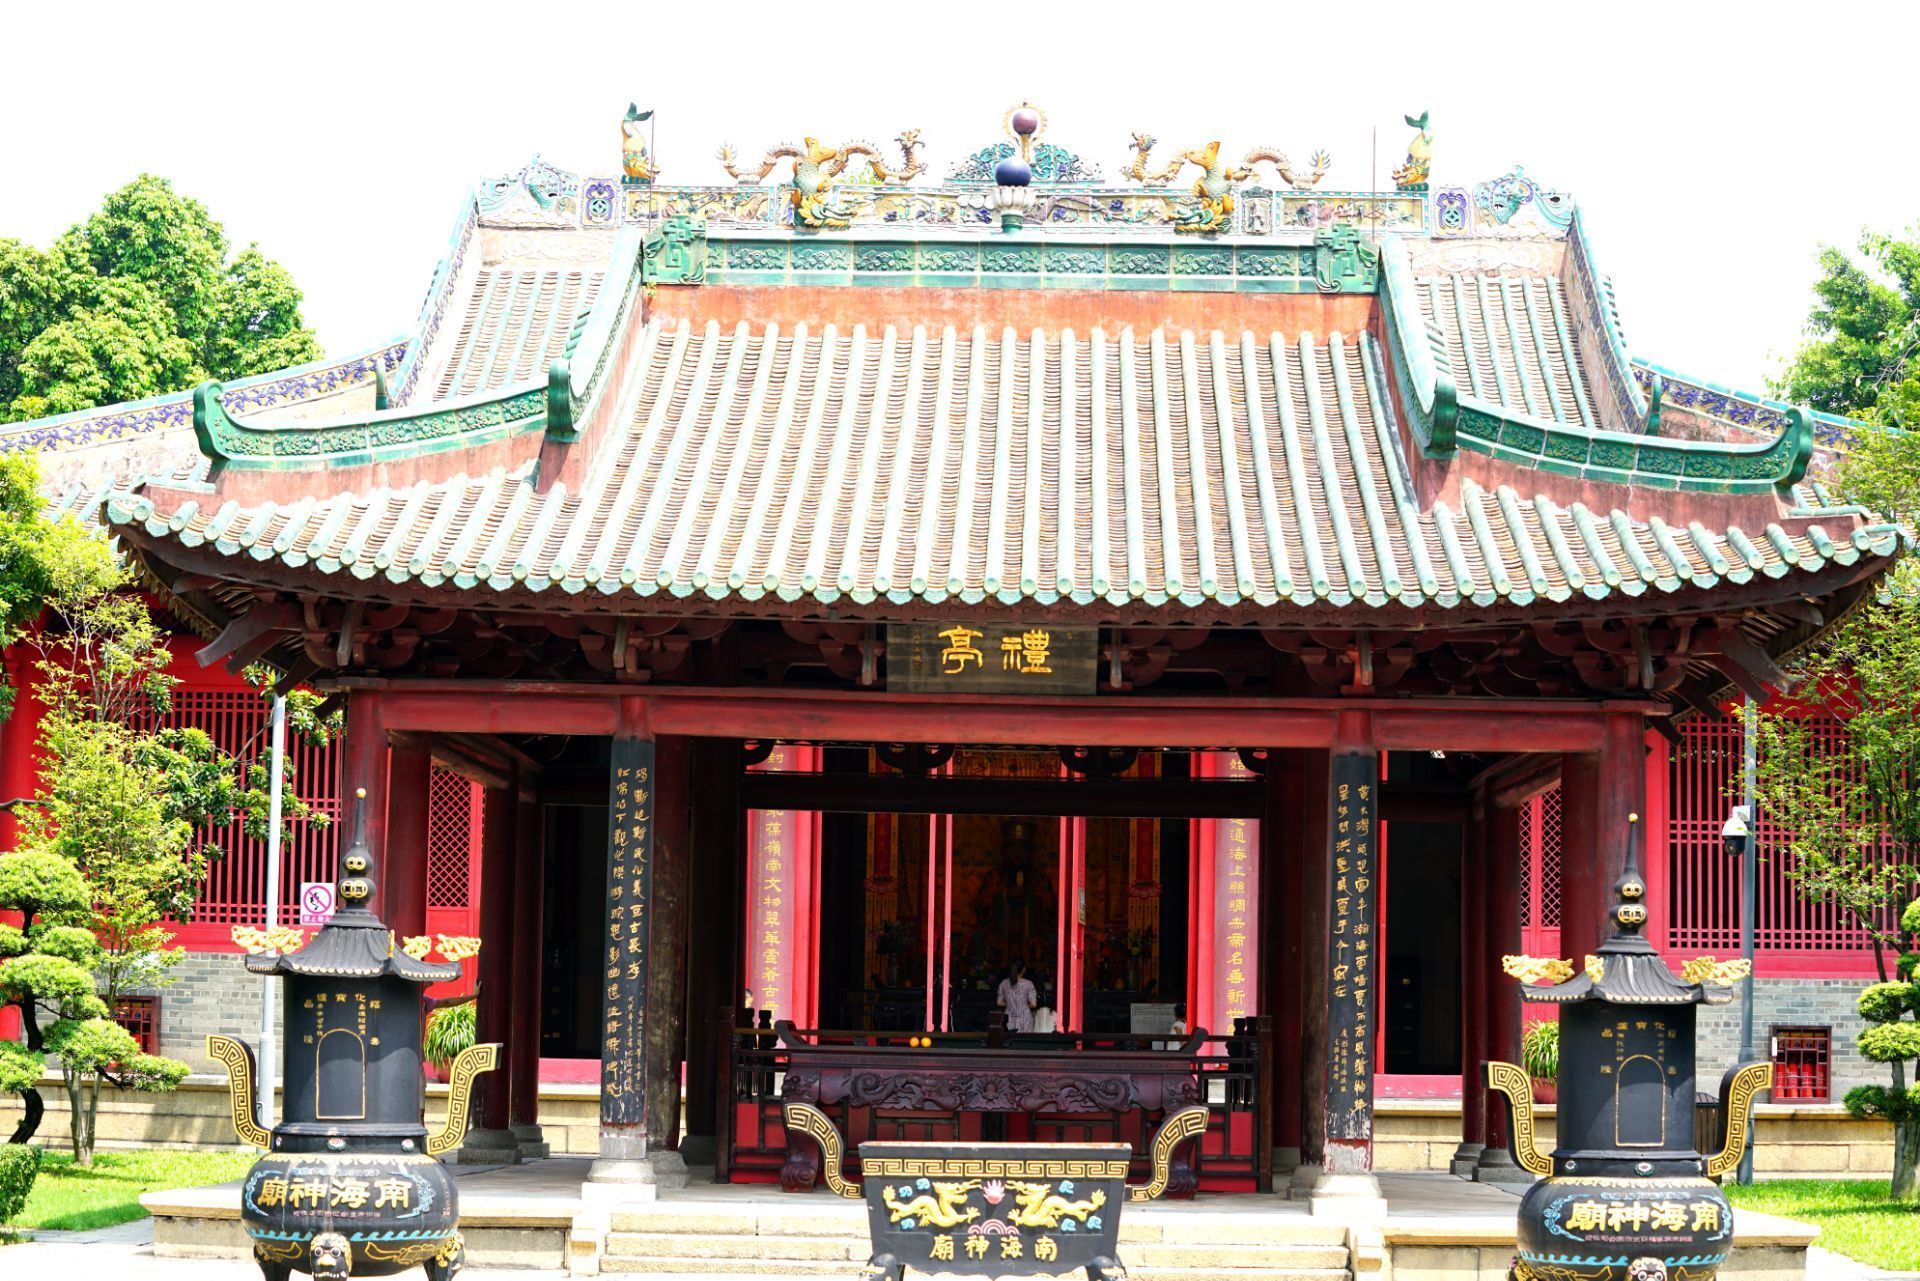 【携程攻略】广州南海神庙景点,南海神与菩萨,天师不同